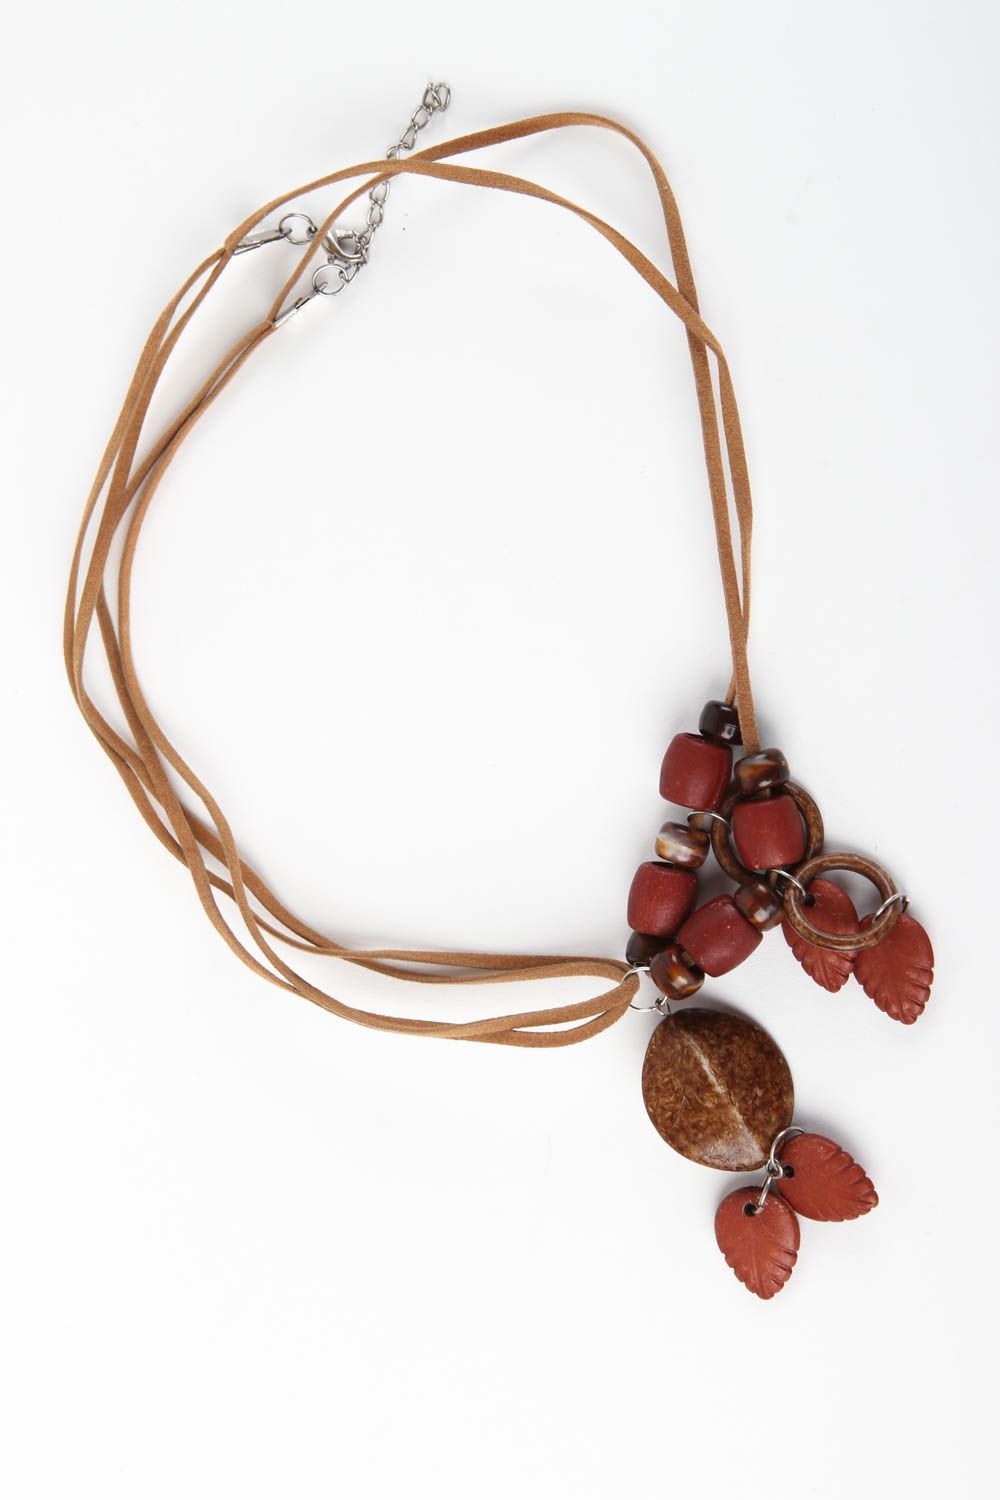 Collier original Bijou fait main perles céramiques marron rouge Cadeau femme photo 2